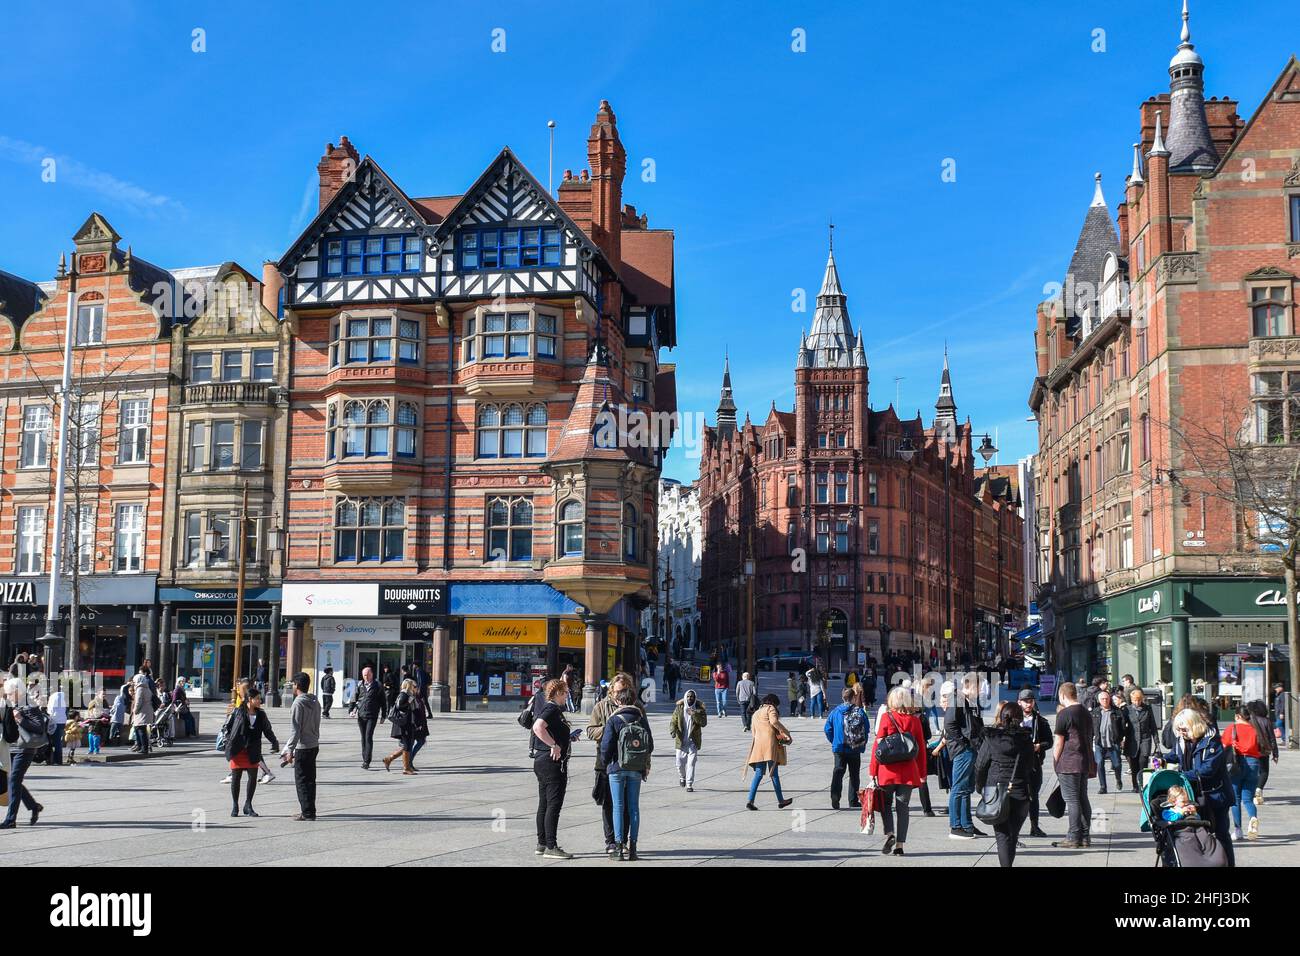 Blick auf die traditionelle Architektur und die historische Geschichte der Geschäfte auf dem alten Marktplatz im Herzen des Stadtzentrums von Nottingham East Midlands, England. Stockfoto